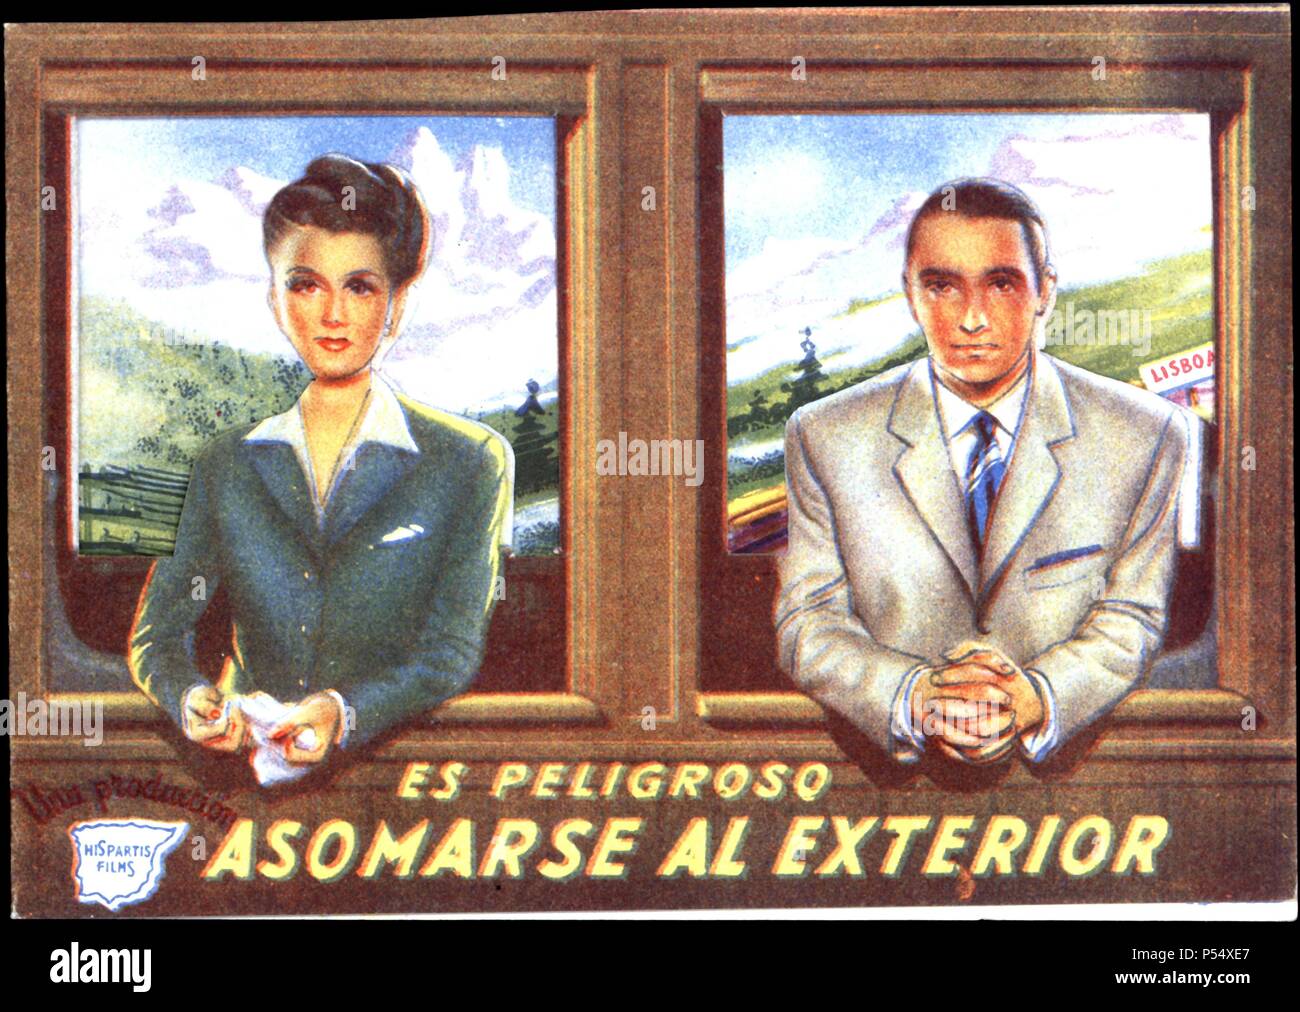 Cartel de la película 'Es peligroso asomarse al exterior', con Ana María Campoy y Alejandro Ulloa. Dirigida por Alejandro Ulloa. Año 1946. Stock Photo